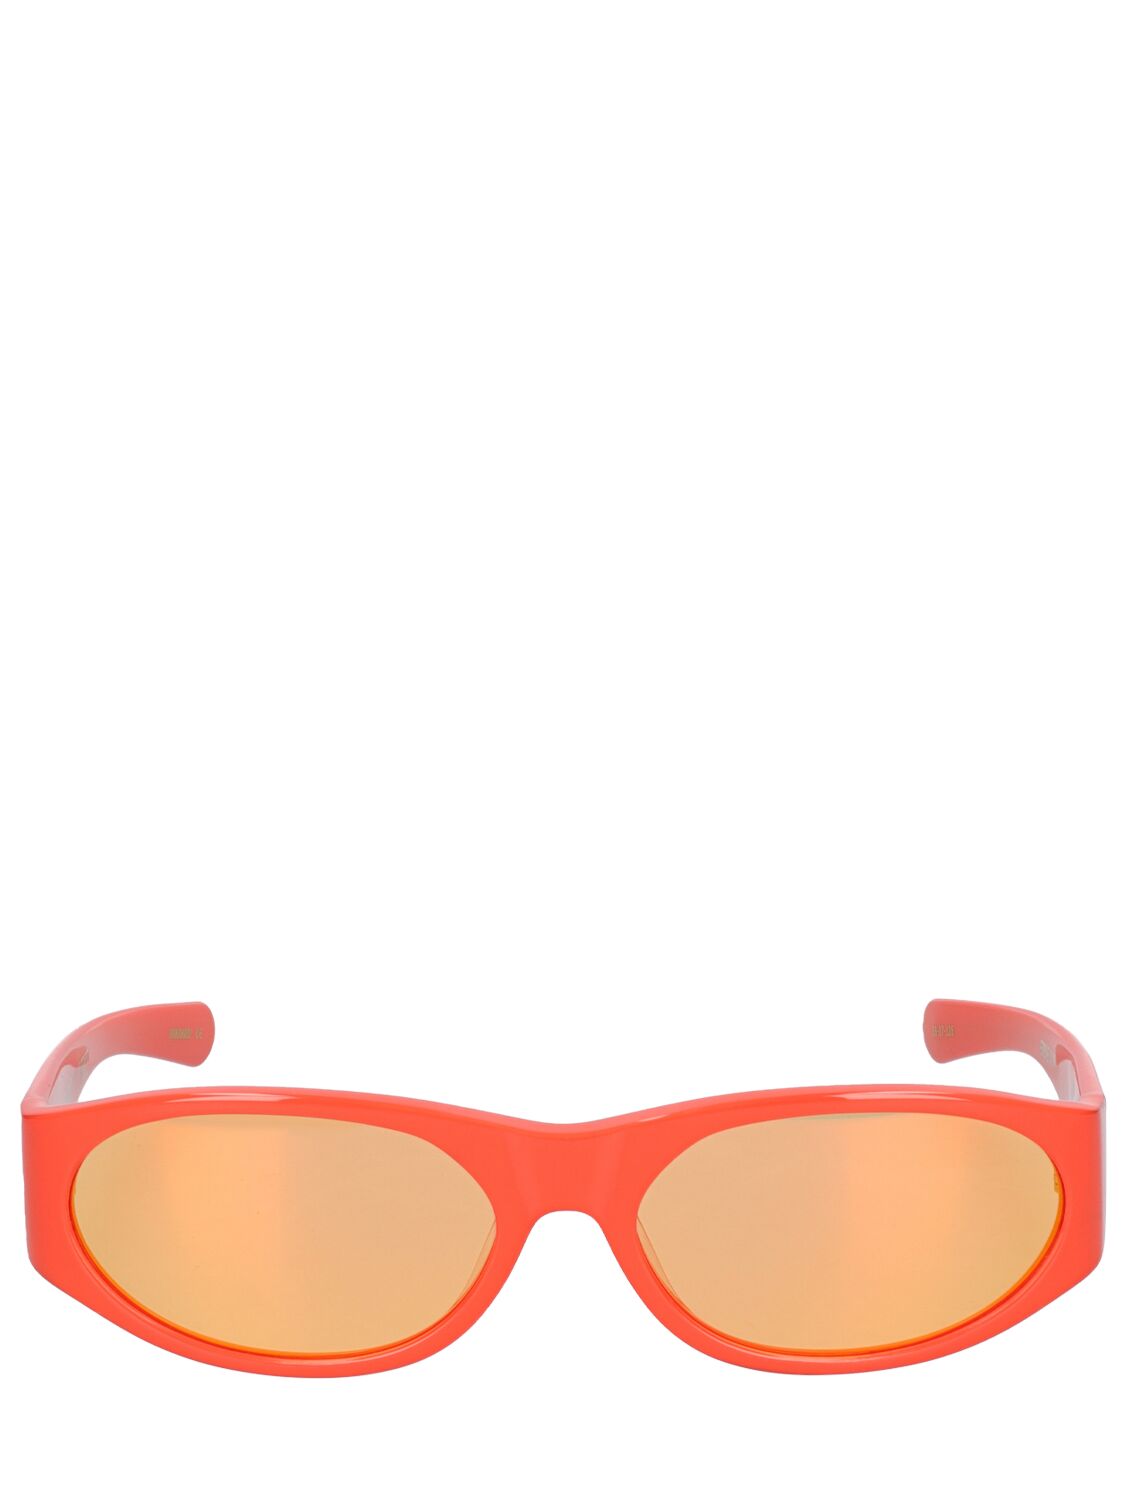 Flatlist Eyewear Office Eddie Kyu Sunglasses In Orange